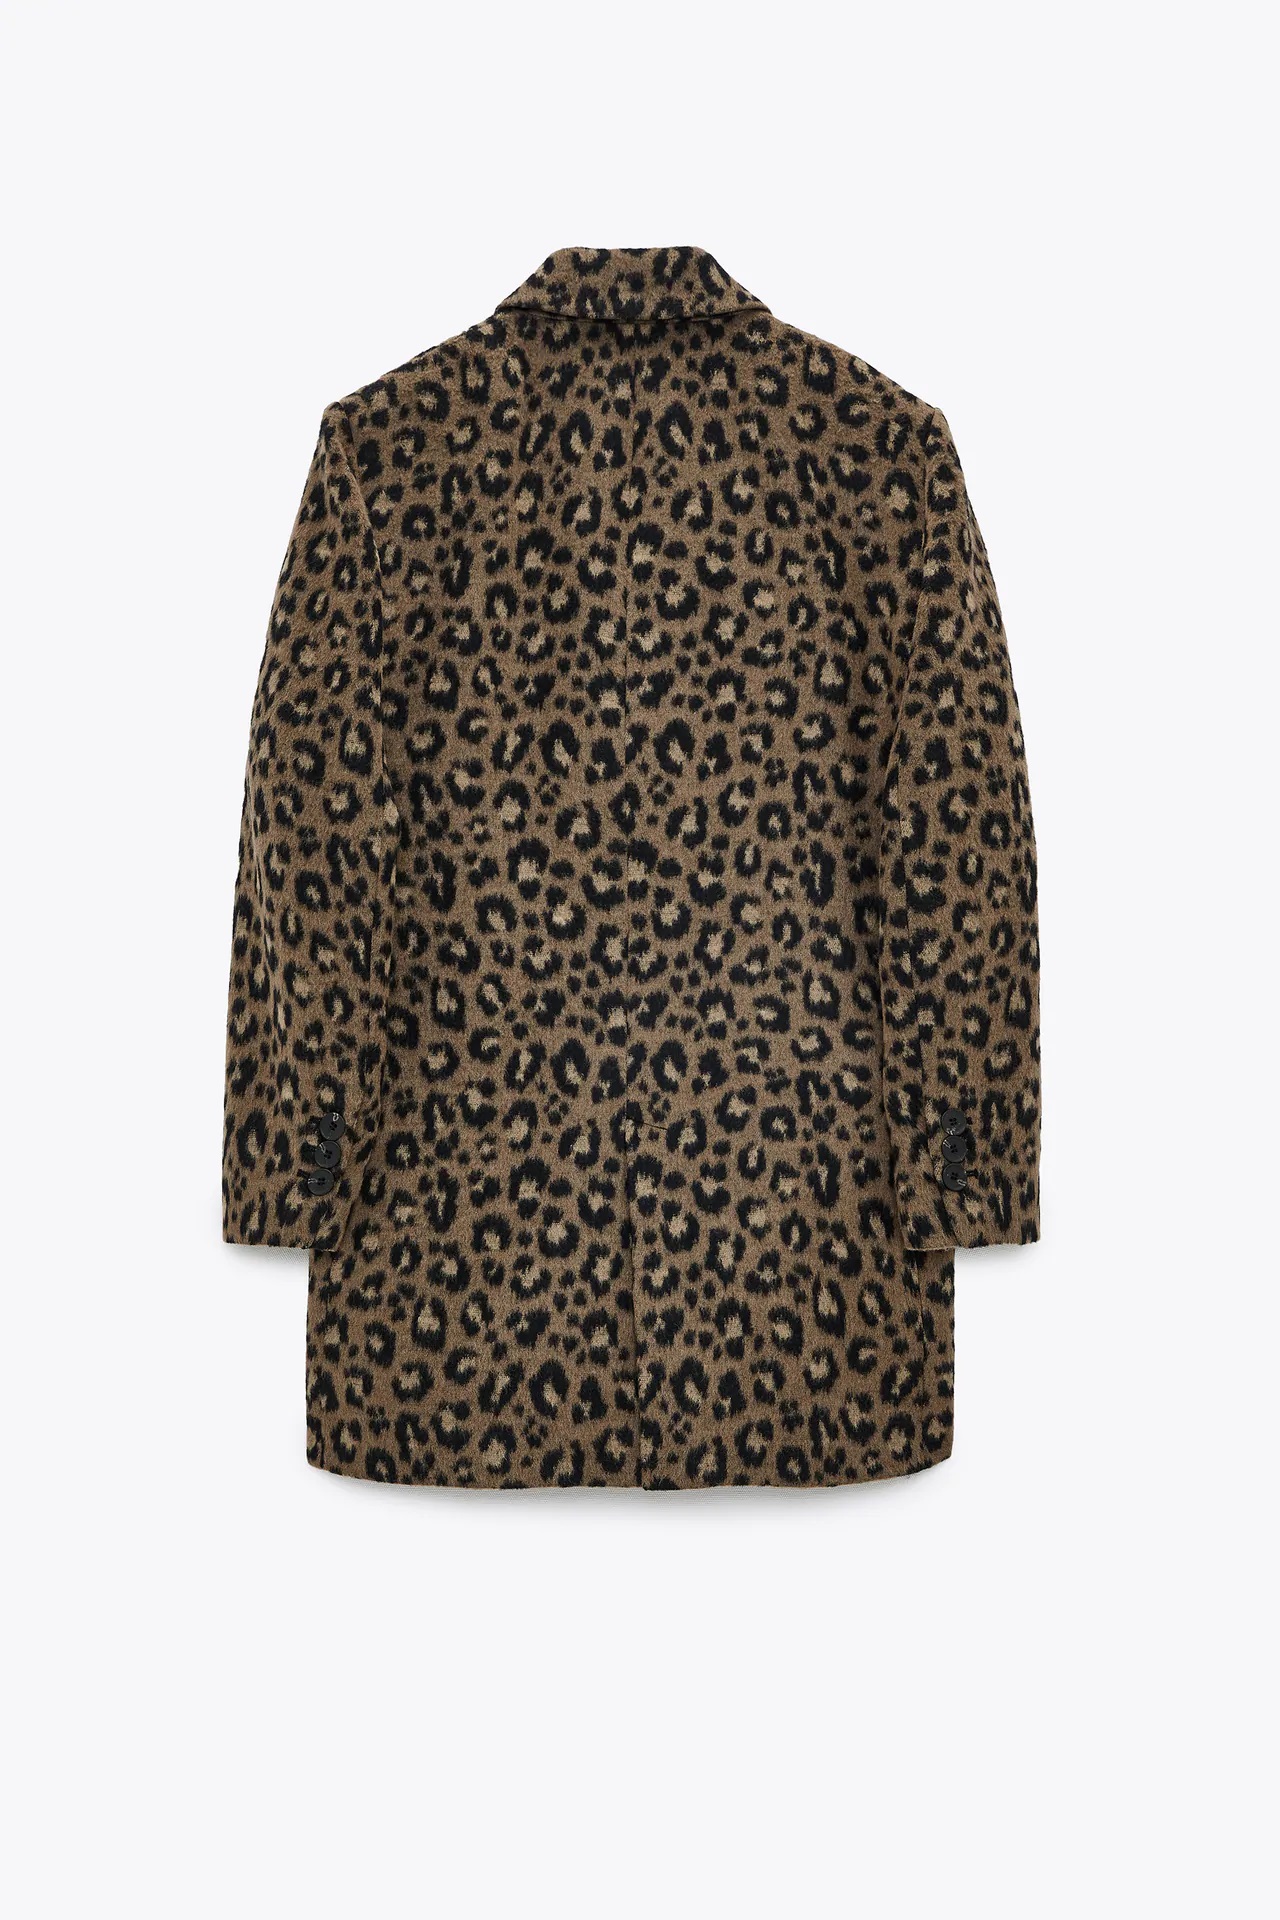 Zara: Este es el abrigo de animal print definitivo para este invierno